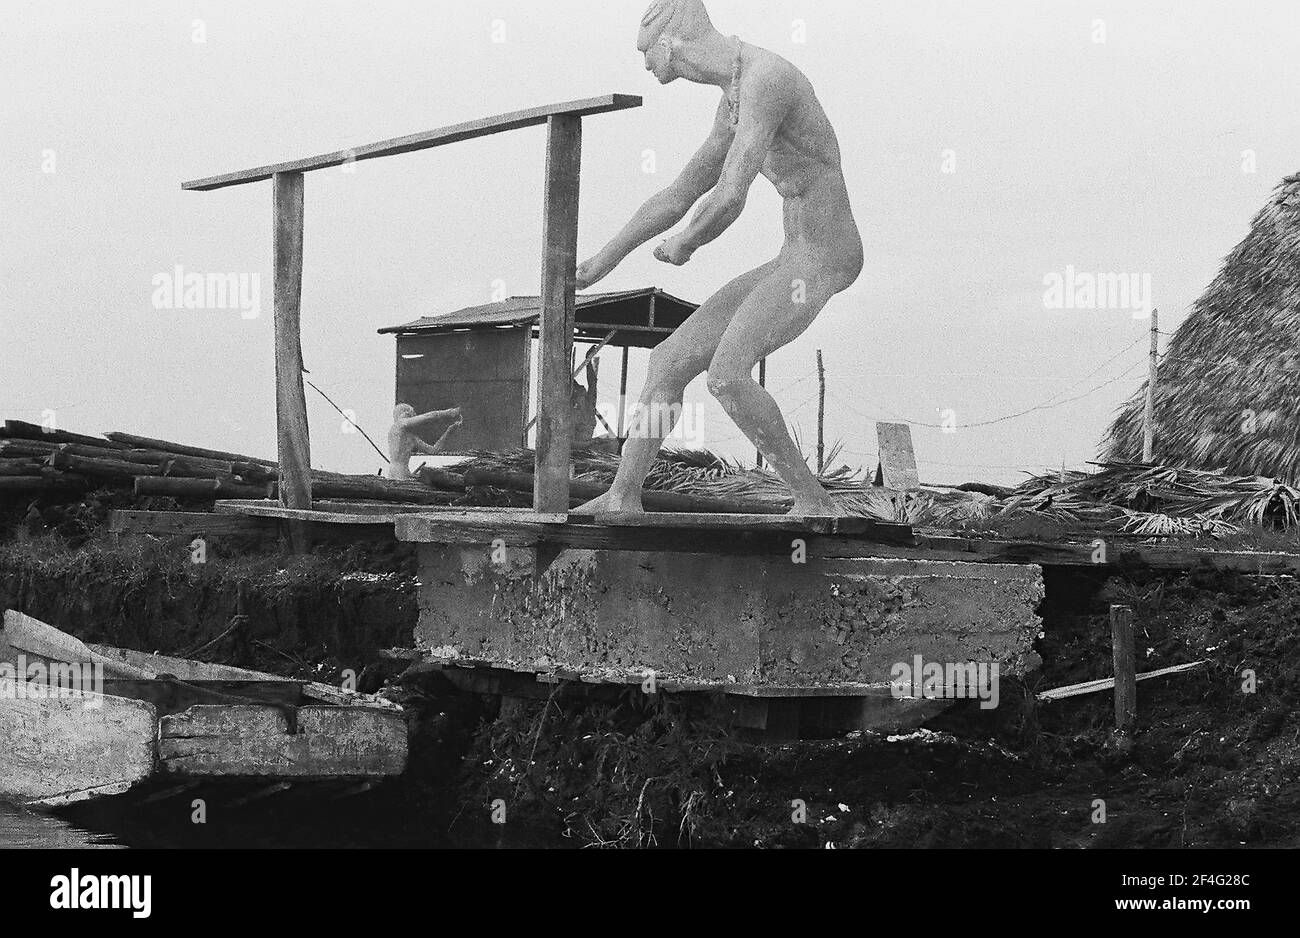 Complexe construit sur marécage drainé près de la baie des Pigs, Cuba, province de Matanzas, Playa Giron, vu du bateau sur la voie navigable, avec la statue présente, 1963. De la collection de photographies Deena Stryker. () Banque D'Images